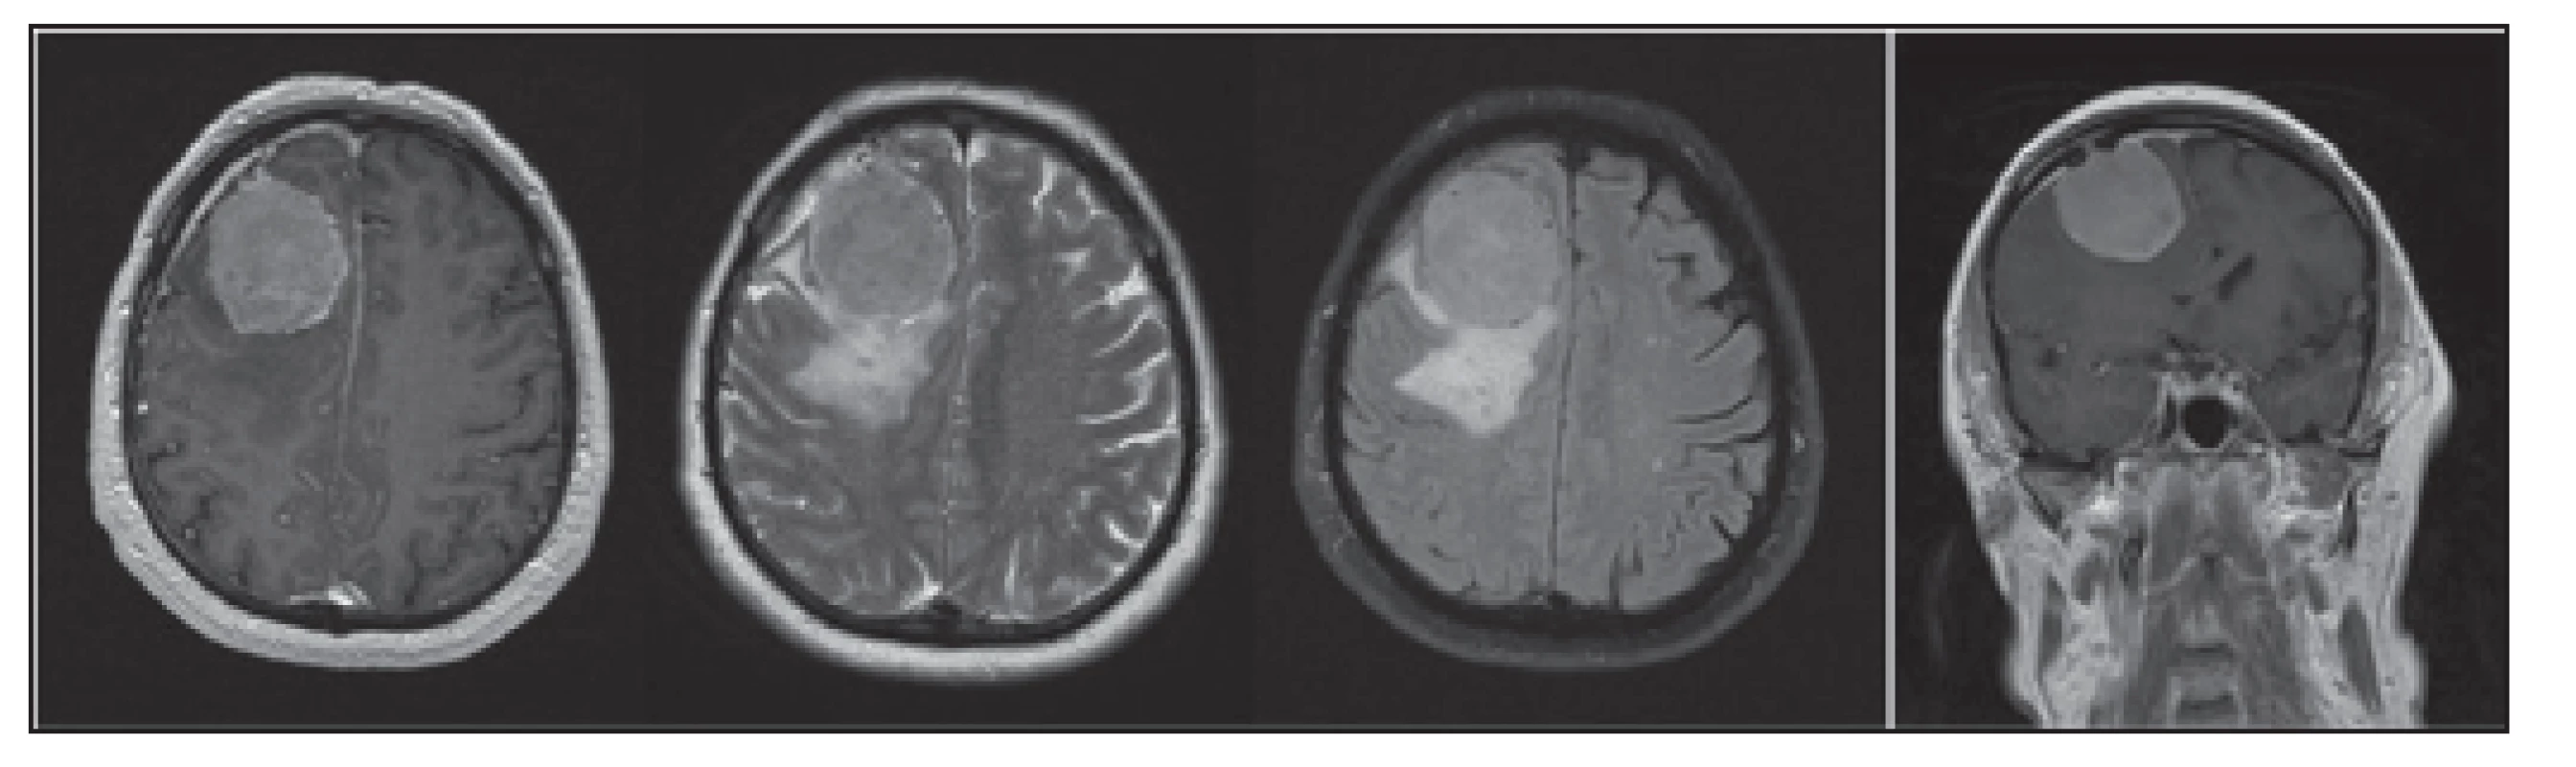 MRI mozku s nálezem extraaxiálního tumoru - meningeomu lokalizovaného frontálně vpravo o průměru 40 mm s perifokálním edémem a incipietní subfalcijní herniací doleva.